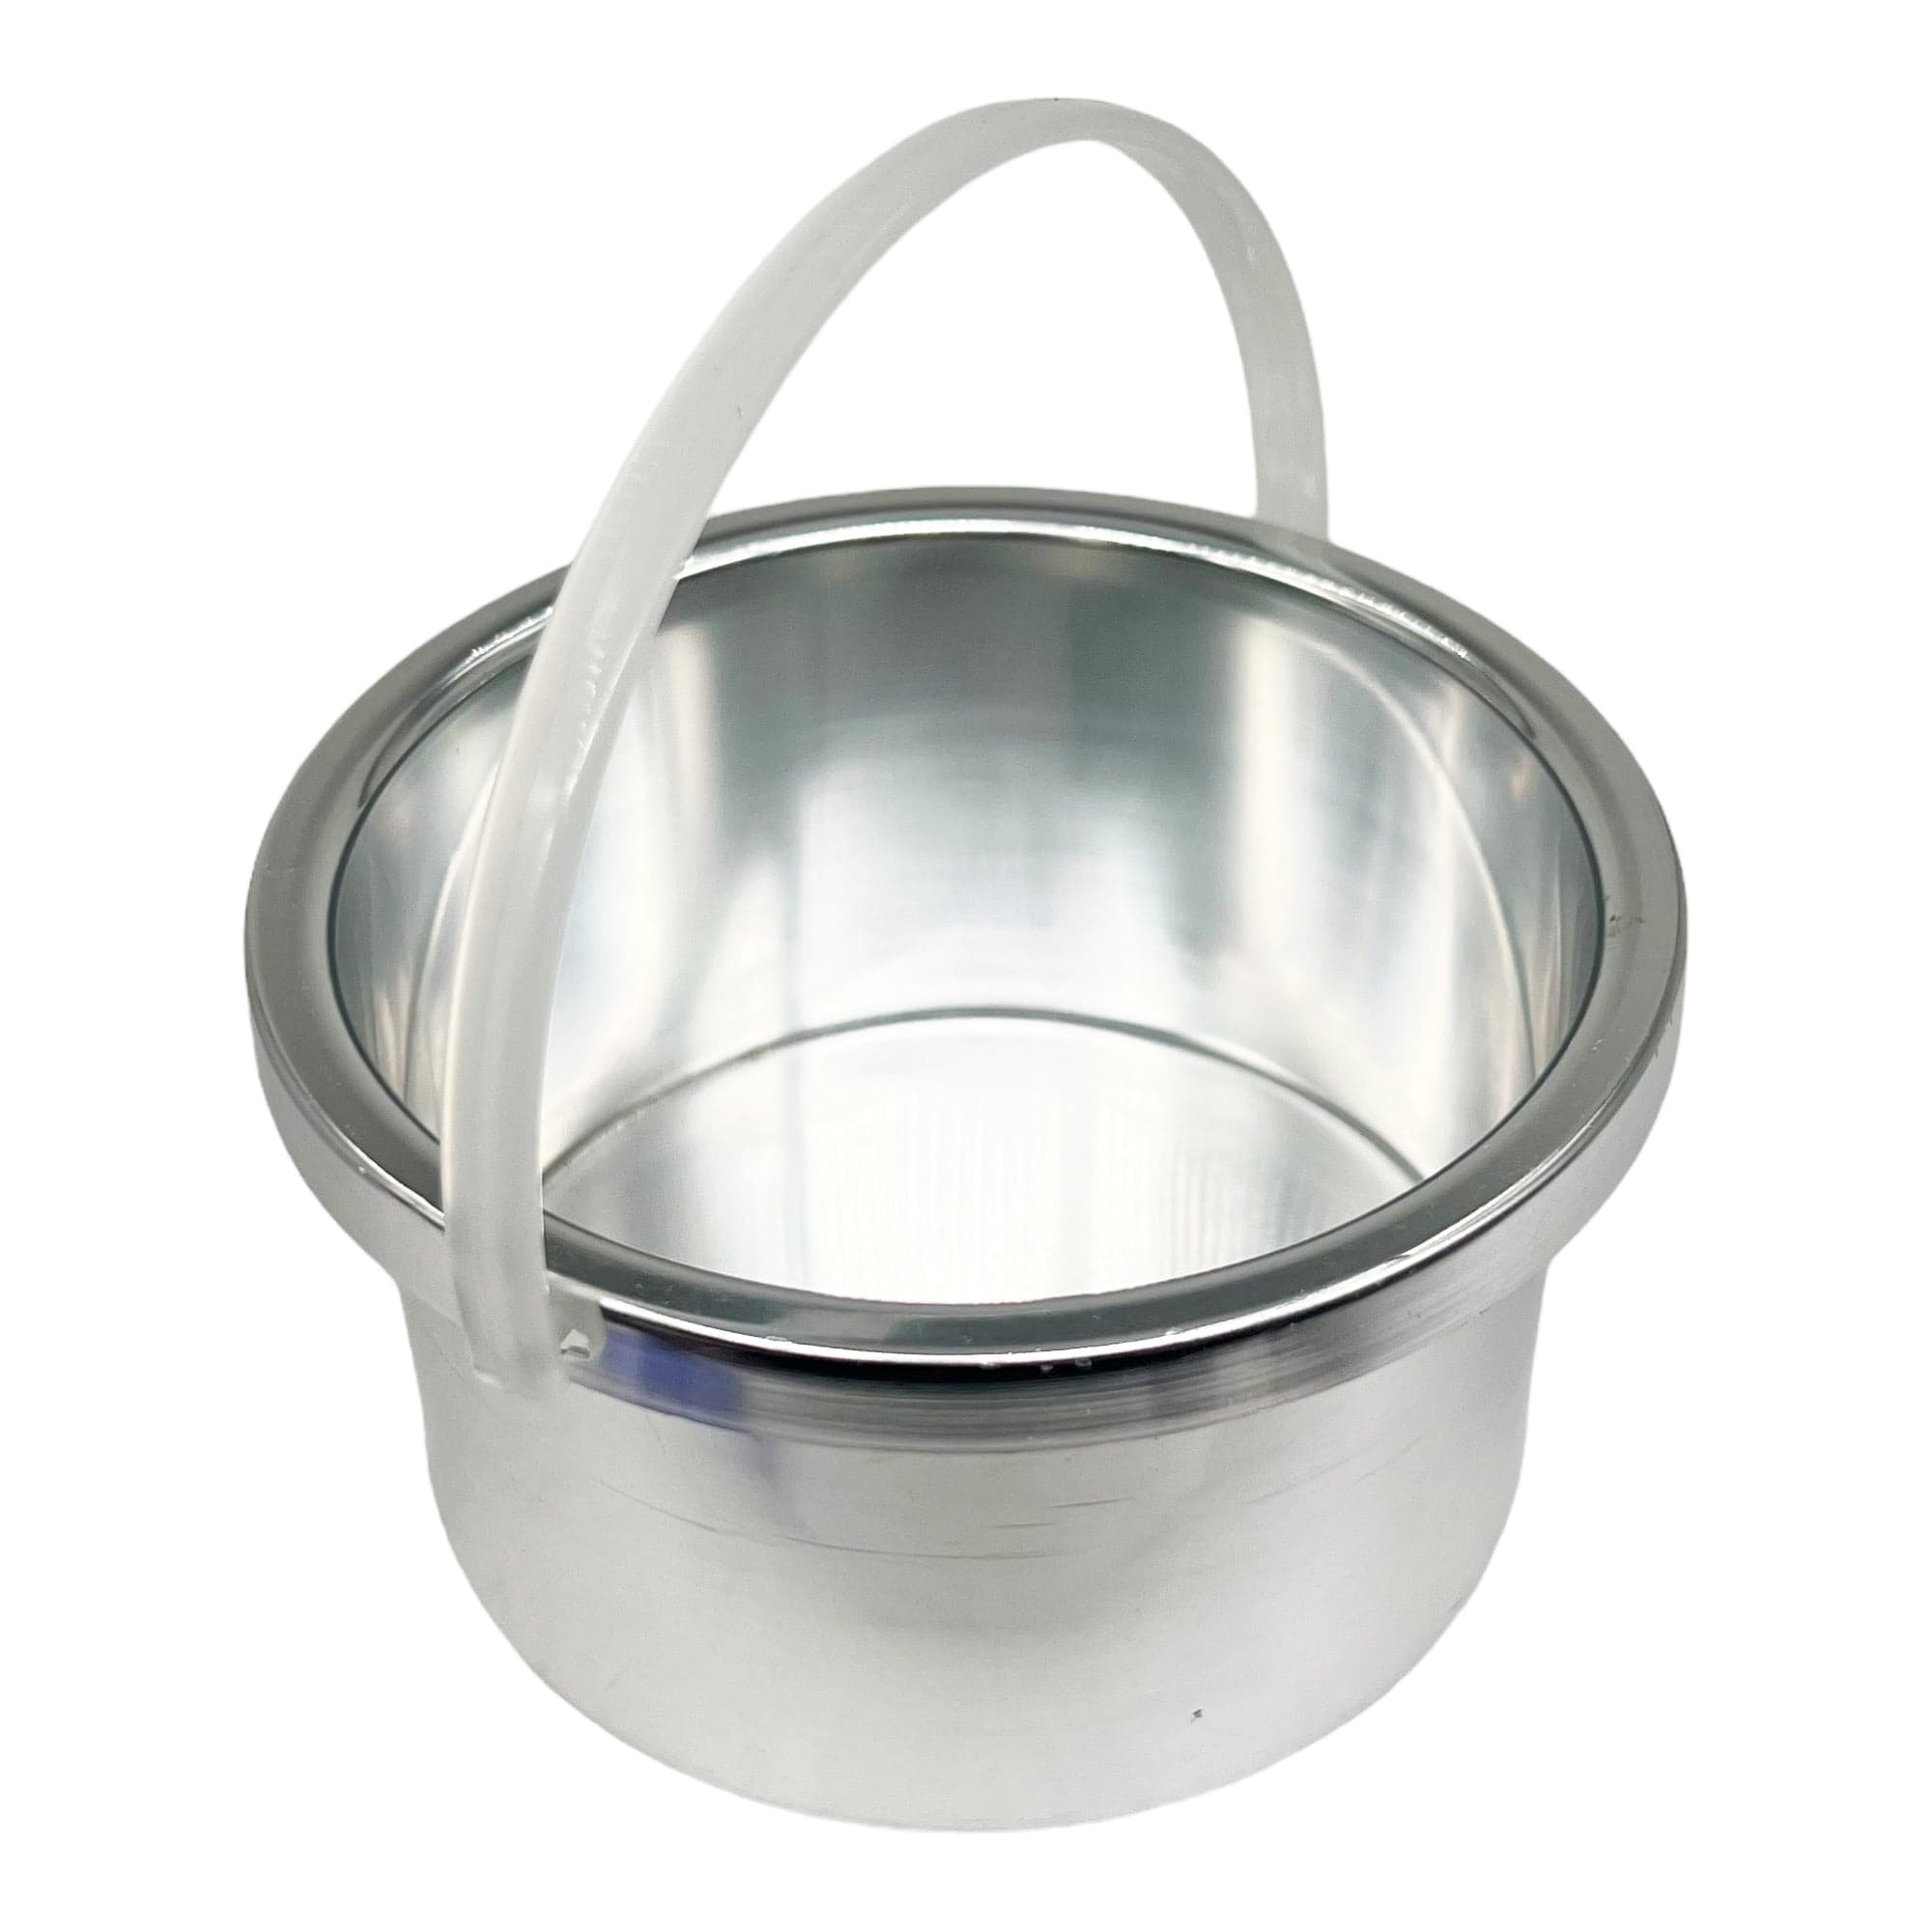 Gabri - Wax Heater Warmer Single Pot (White)